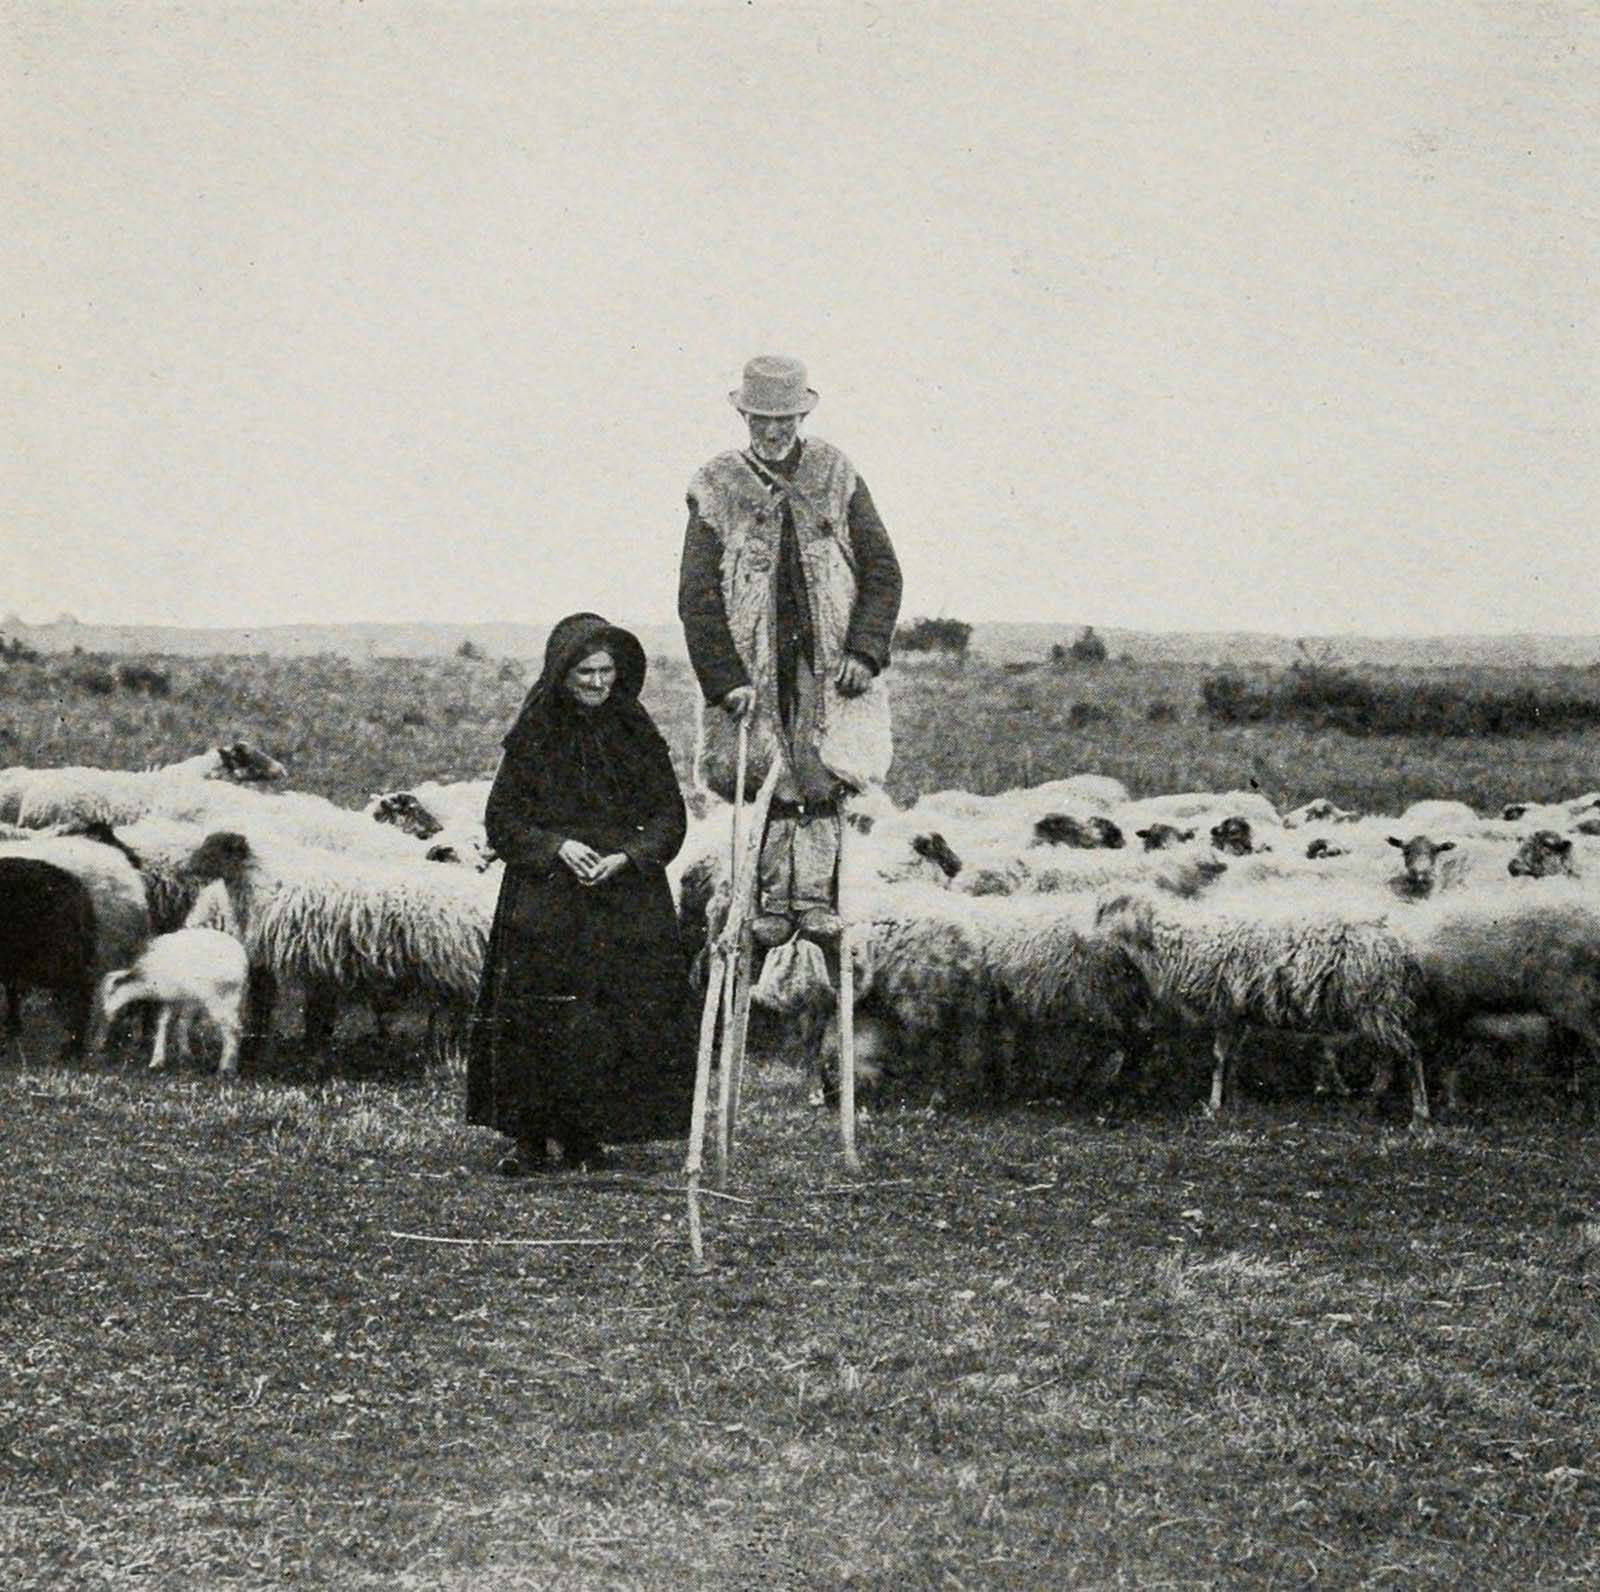 Les bergers sur pilotis des prairies françaises, 1843-1937